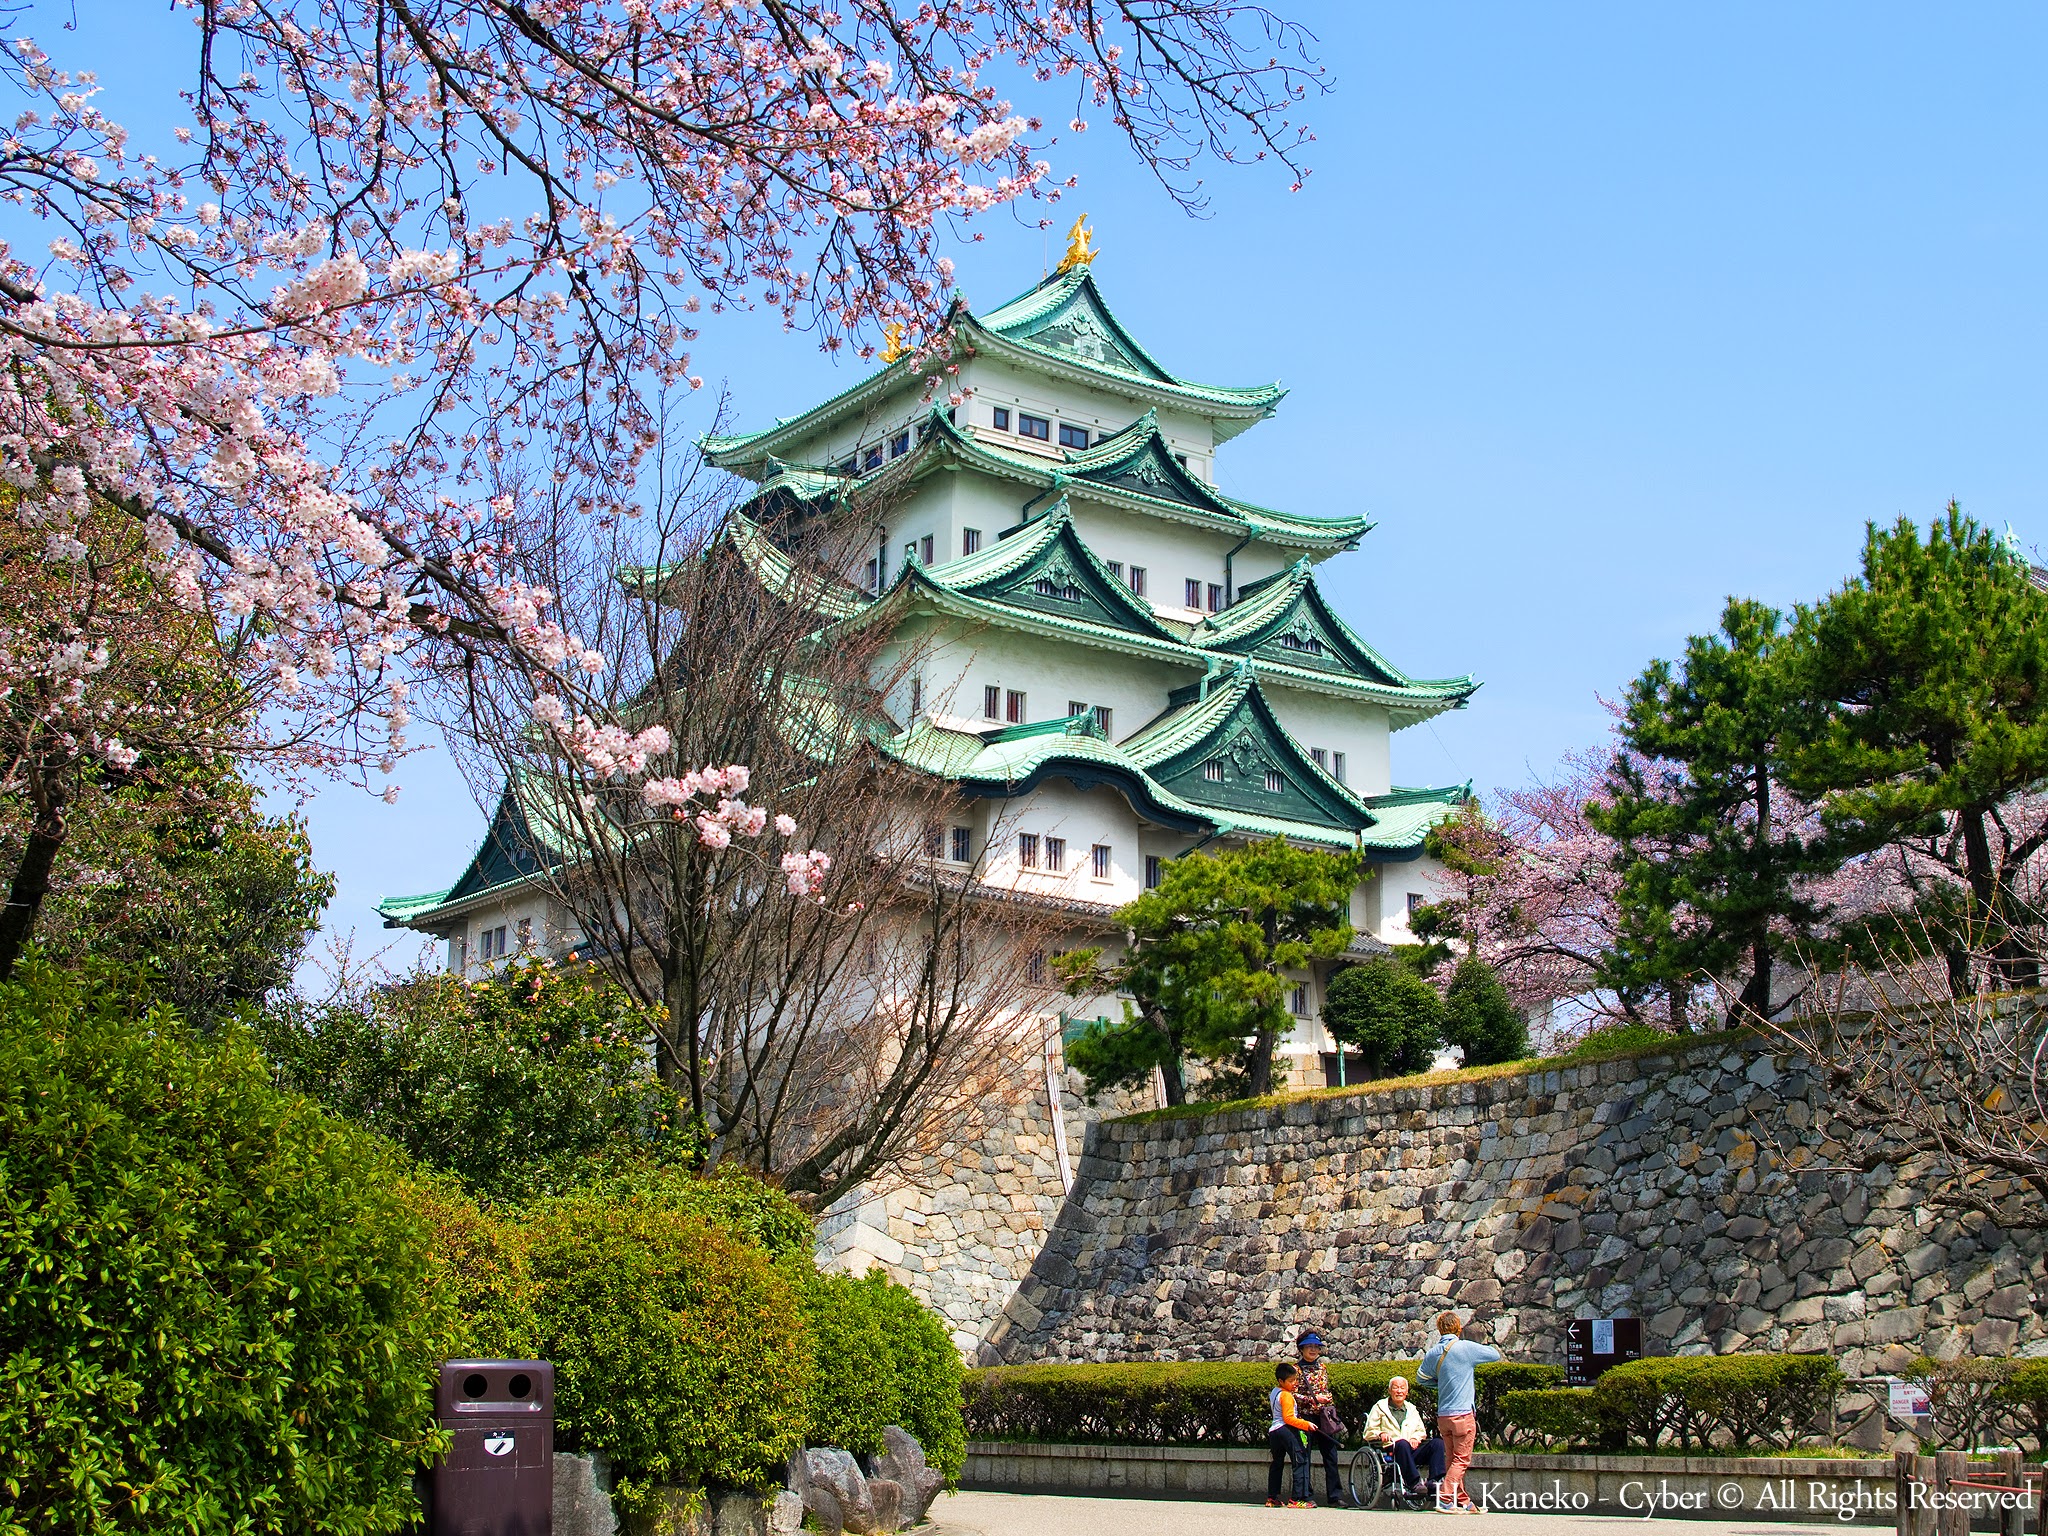 桜と名古屋城(Nagoya_Castle_with_Cherry_blossoms)_31_Mar,_2016_-_panoramio.jpg